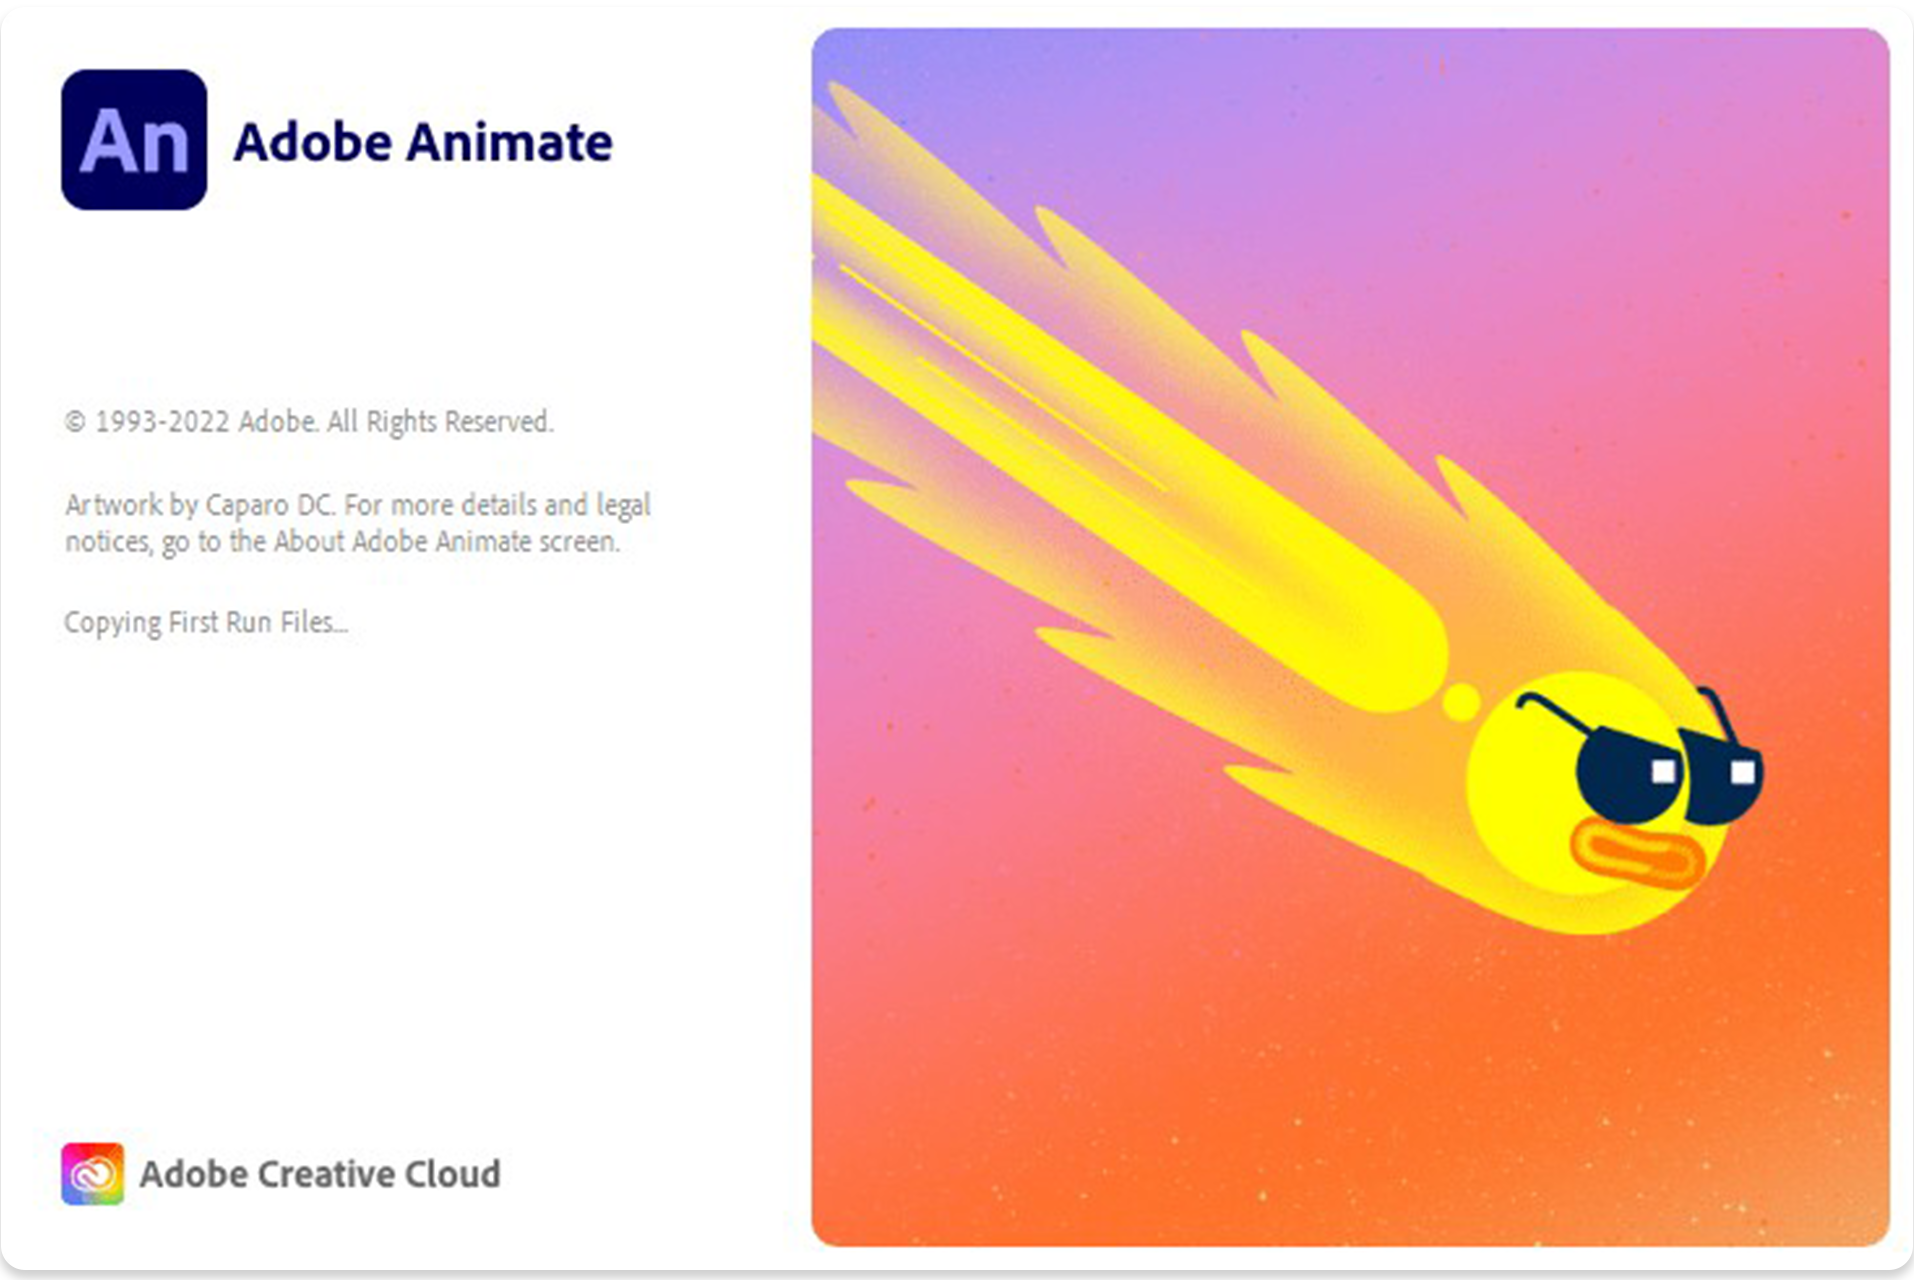 Adobe Animate โปรแกรมทำภาพเคลื่อนไหว อนิเมชั่นบนเว็บไซต์ หรือ Web Animation ถูกพัฒนามาจาก Adobe Flash เพื่อให้รองรับมาตรฐาน HTML5 Canvas, เนื้อหาสำหรับเว็บ และวิดีโอความละเอียดสูง 4K และมีความปลอดภัย